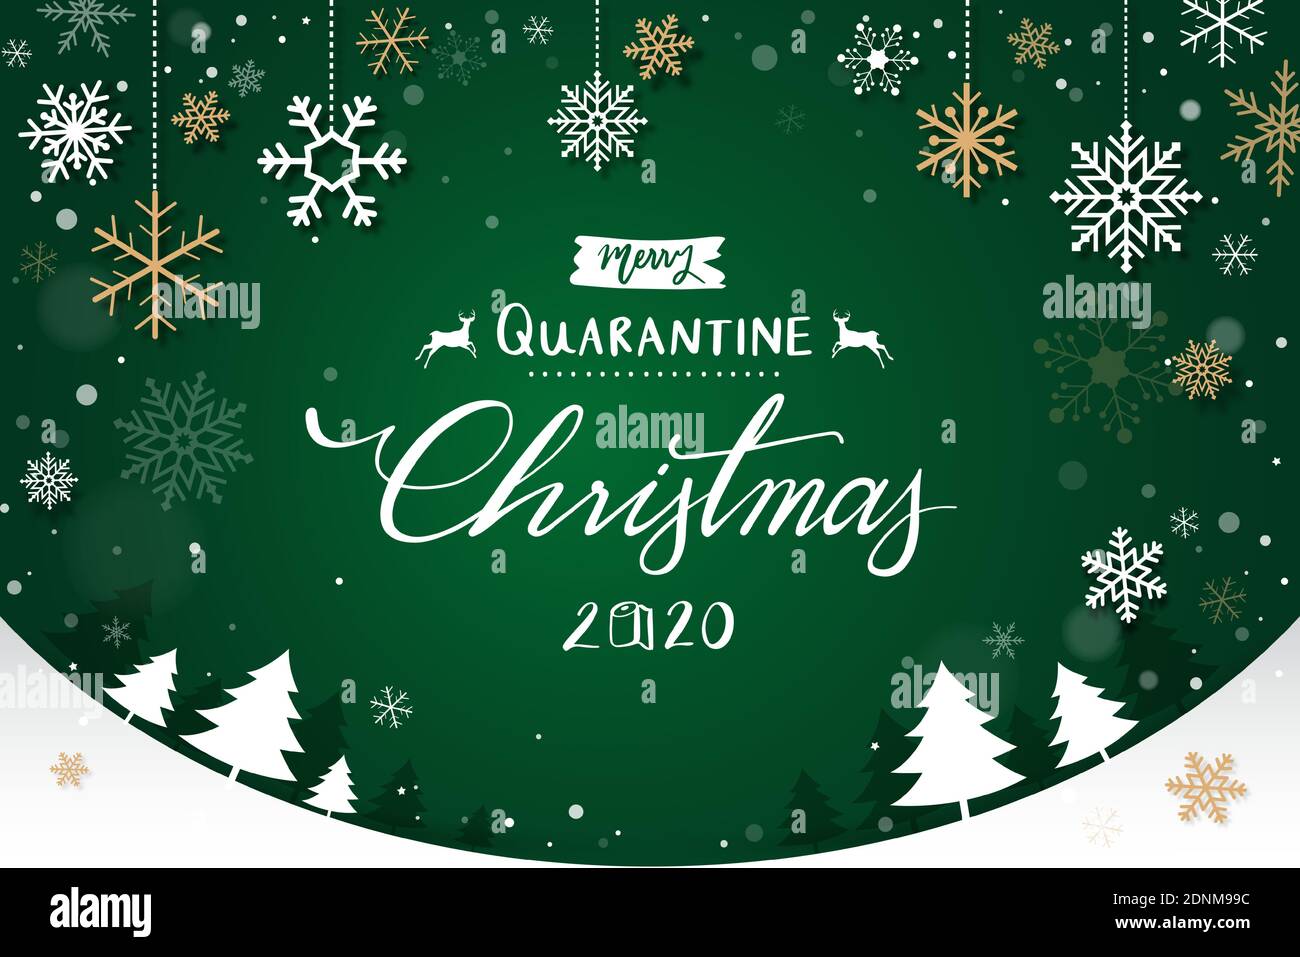 Frohe Quarantäne Weihnachten 2020 Text auf grünem Hintergrund mit Schneeflocken Und Weihnachtsbäume Stock Vektor